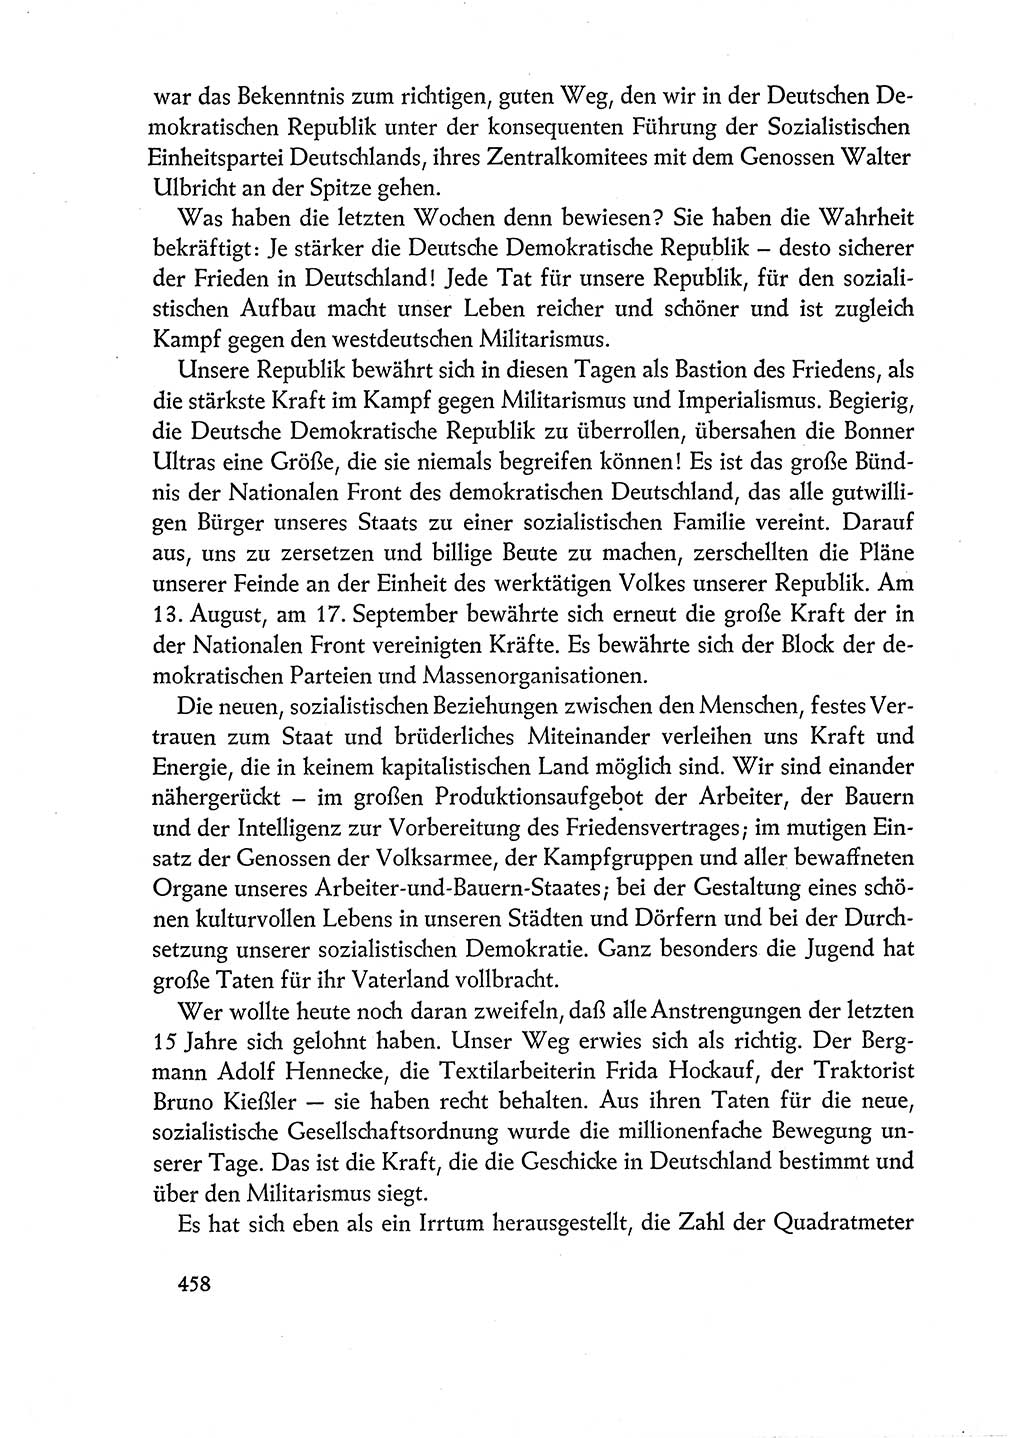 Dokumente der Sozialistischen Einheitspartei Deutschlands (SED) [Deutsche Demokratische Republik (DDR)] 1960-1961, Seite 458 (Dok. SED DDR 1960-1961, S. 458)